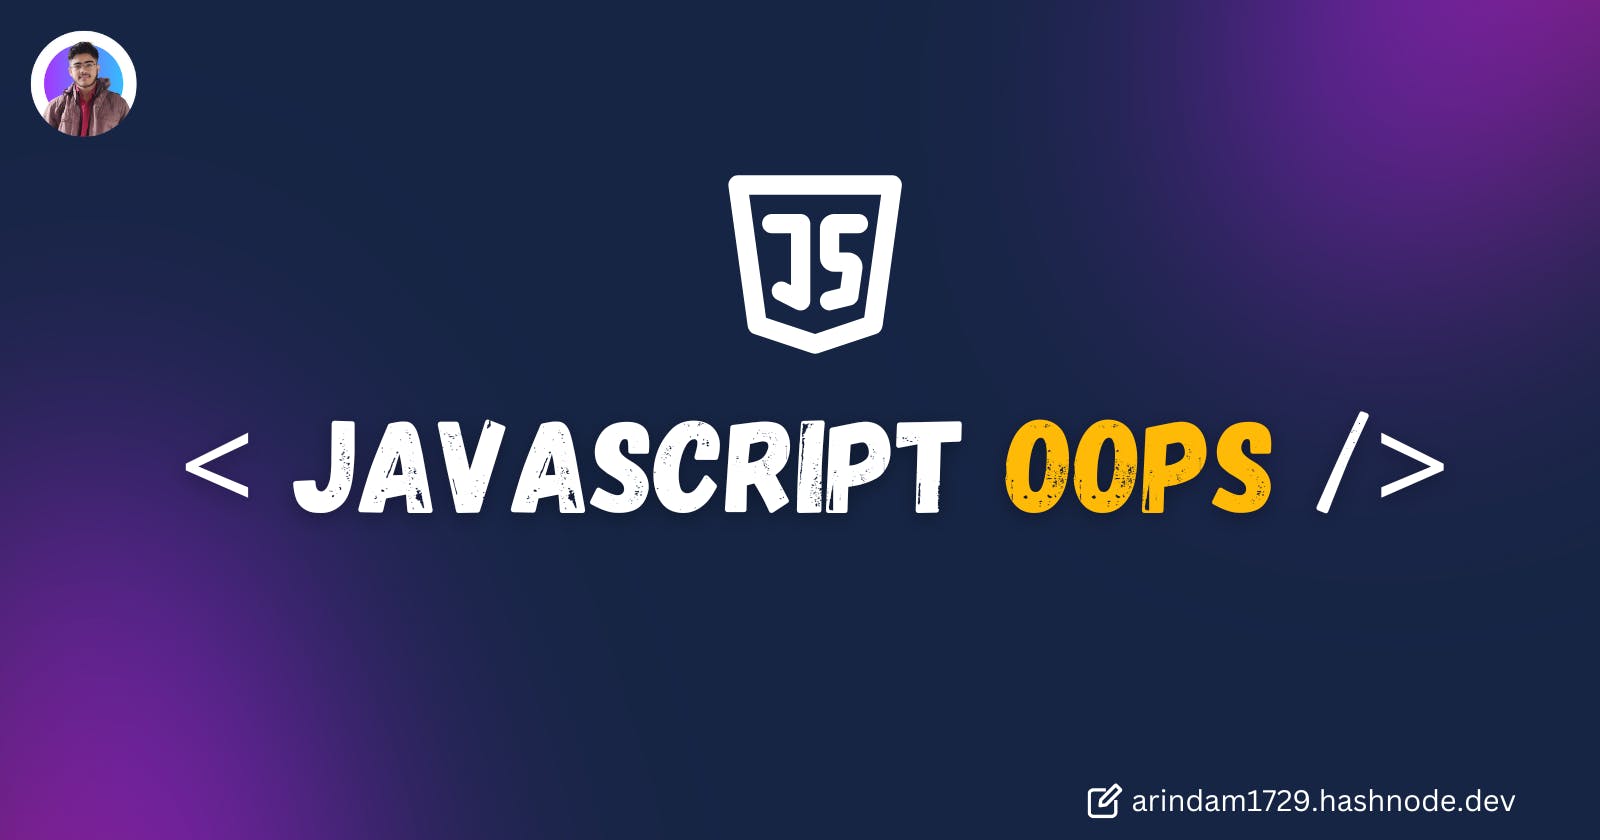 Understanding JavasScript OOPs